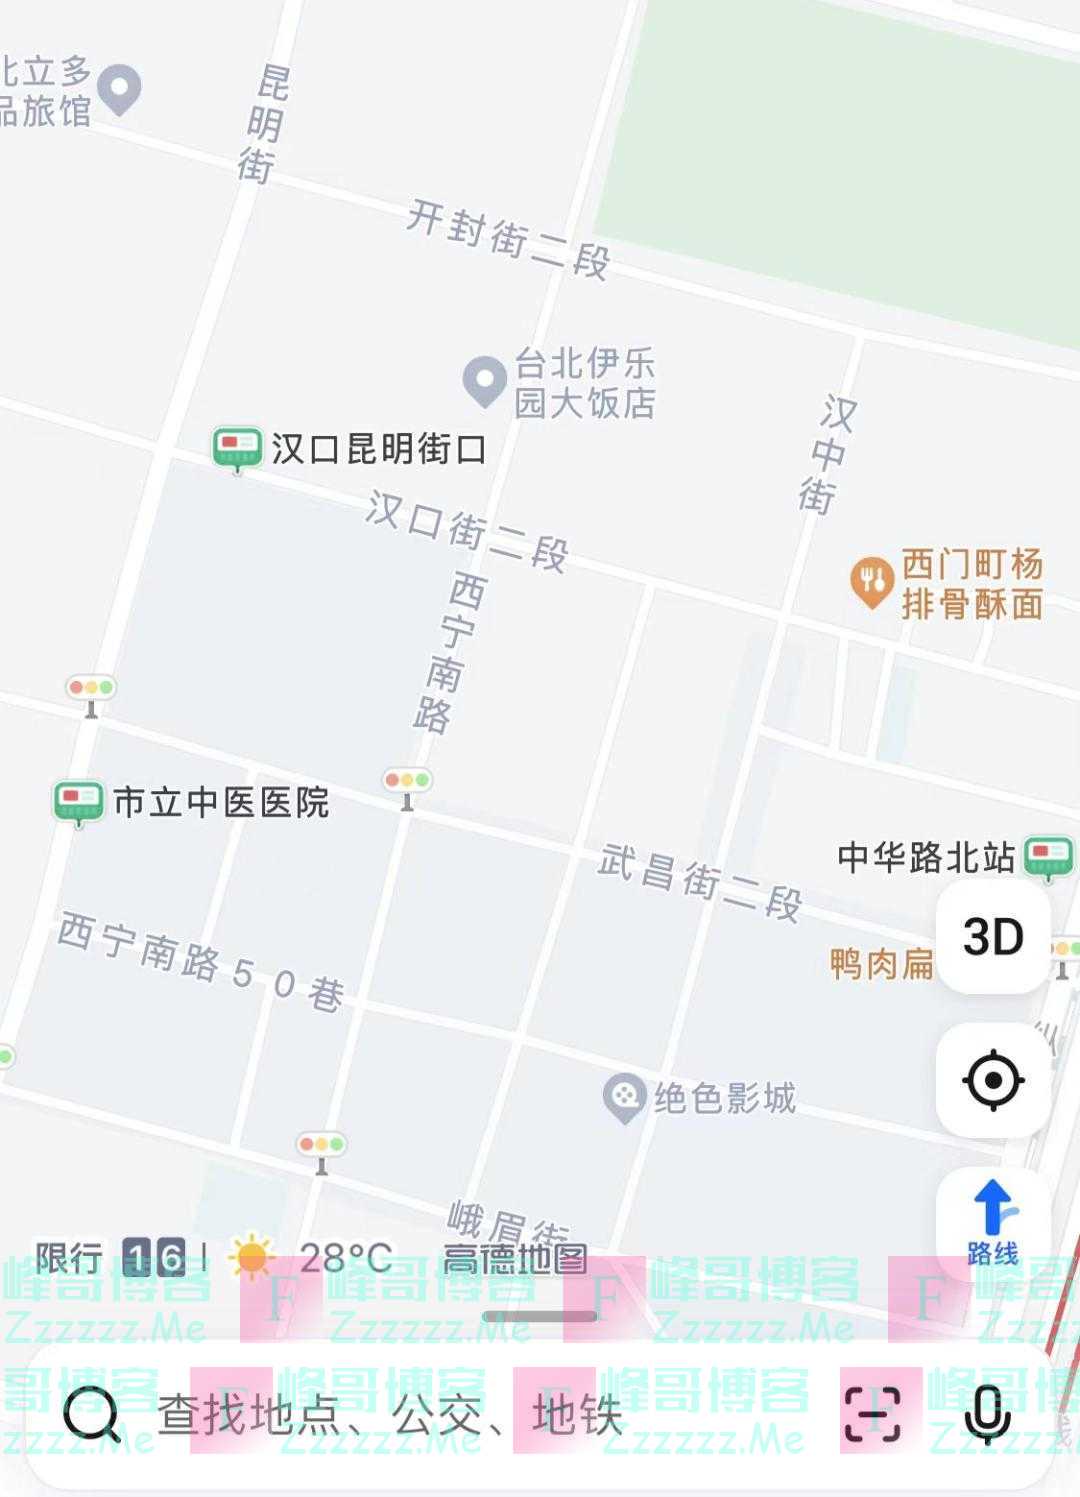 原来台湾省地图这么有意思